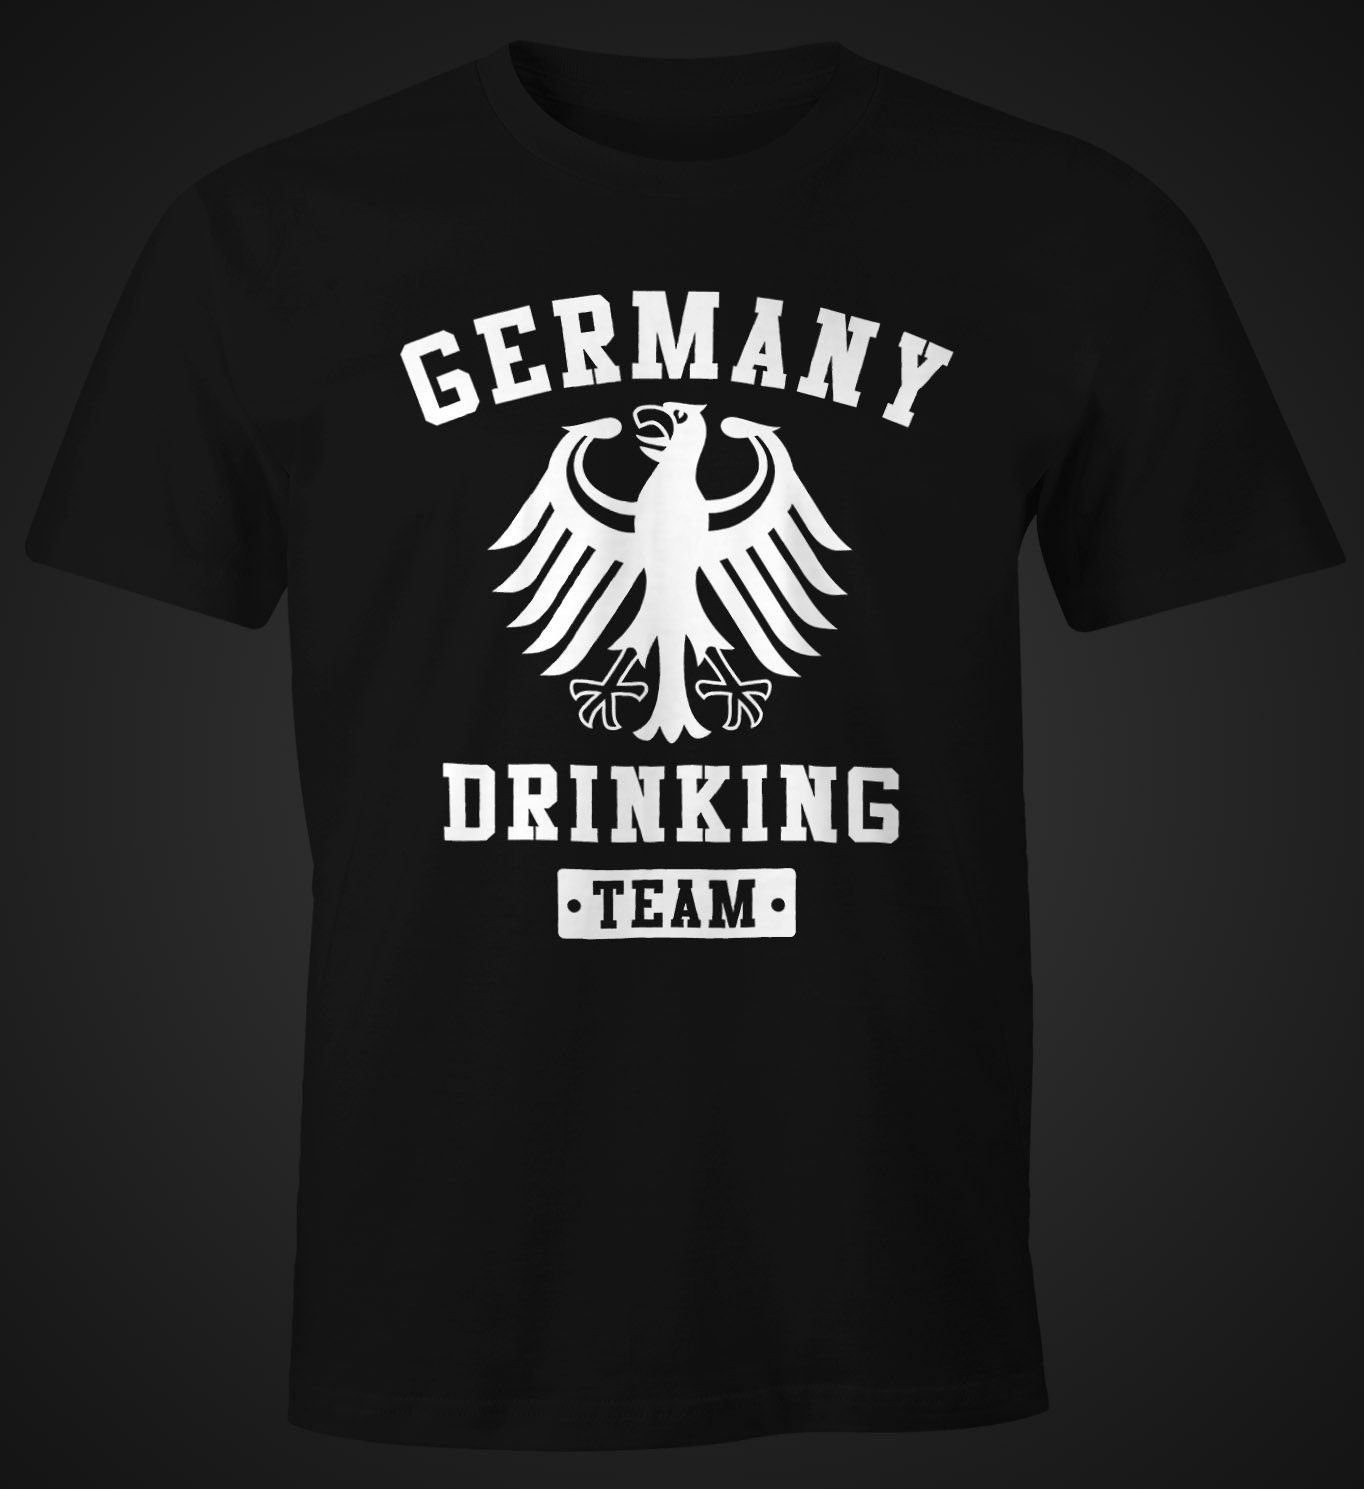 MoonWorks Print-Shirt Team Fun-Shirt Germany mit Moonworks® Drinking Print schwarz Herren T-Shirt Deutschland Adler Bier